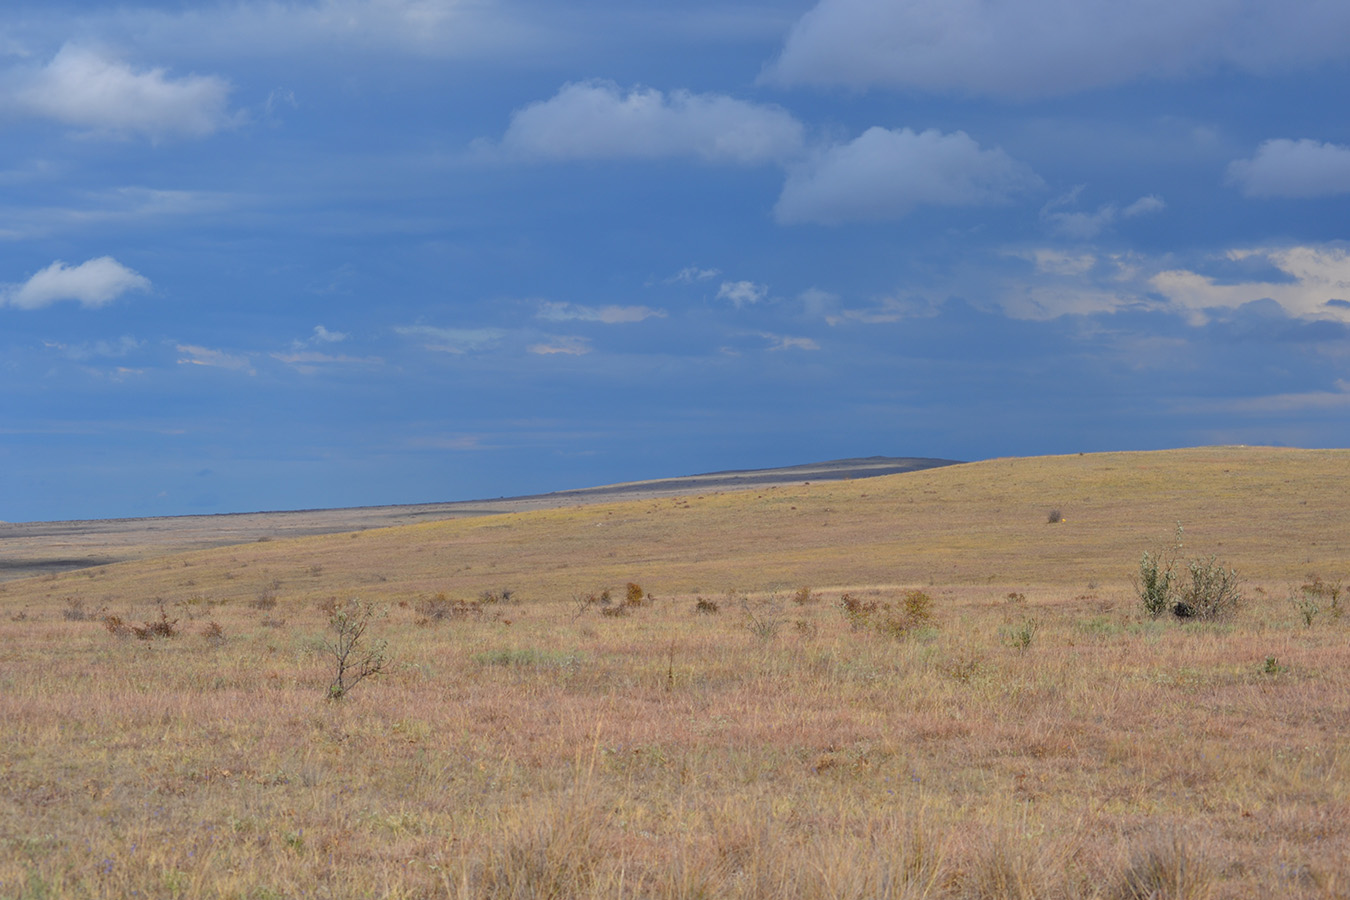 Караларская степь, image of landscape/habitat.